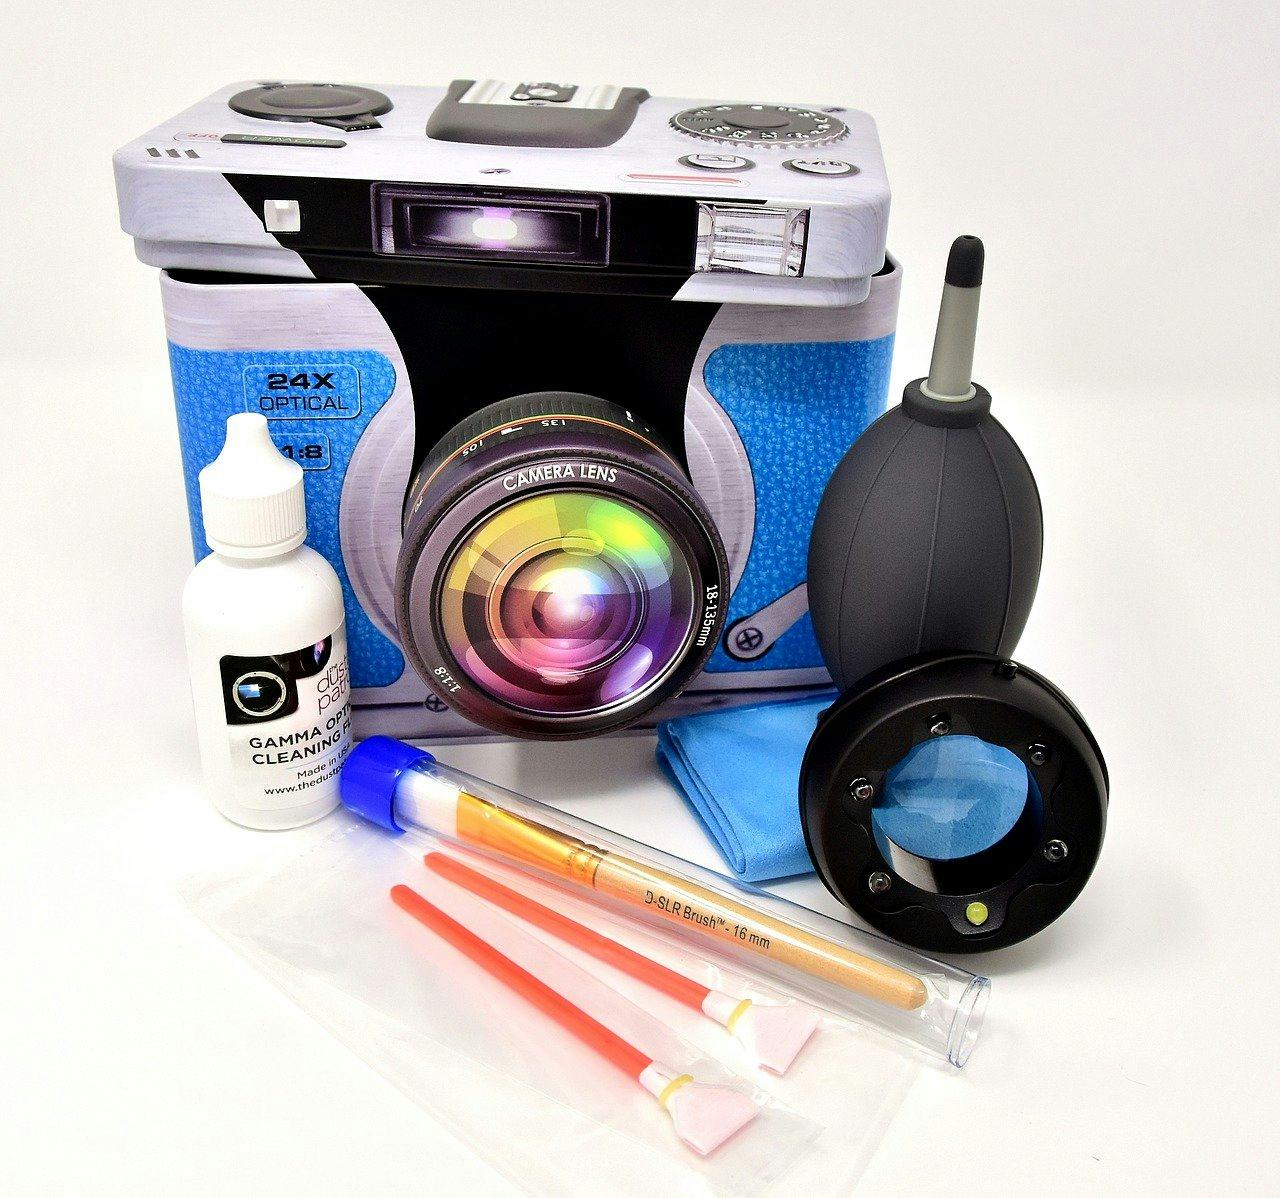 Kit limpiador de lentes – Spray limpiador profesional de lentes con paños  de microfibra – Lo mejor para lentes, cámaras y lentes – Limpia de forma